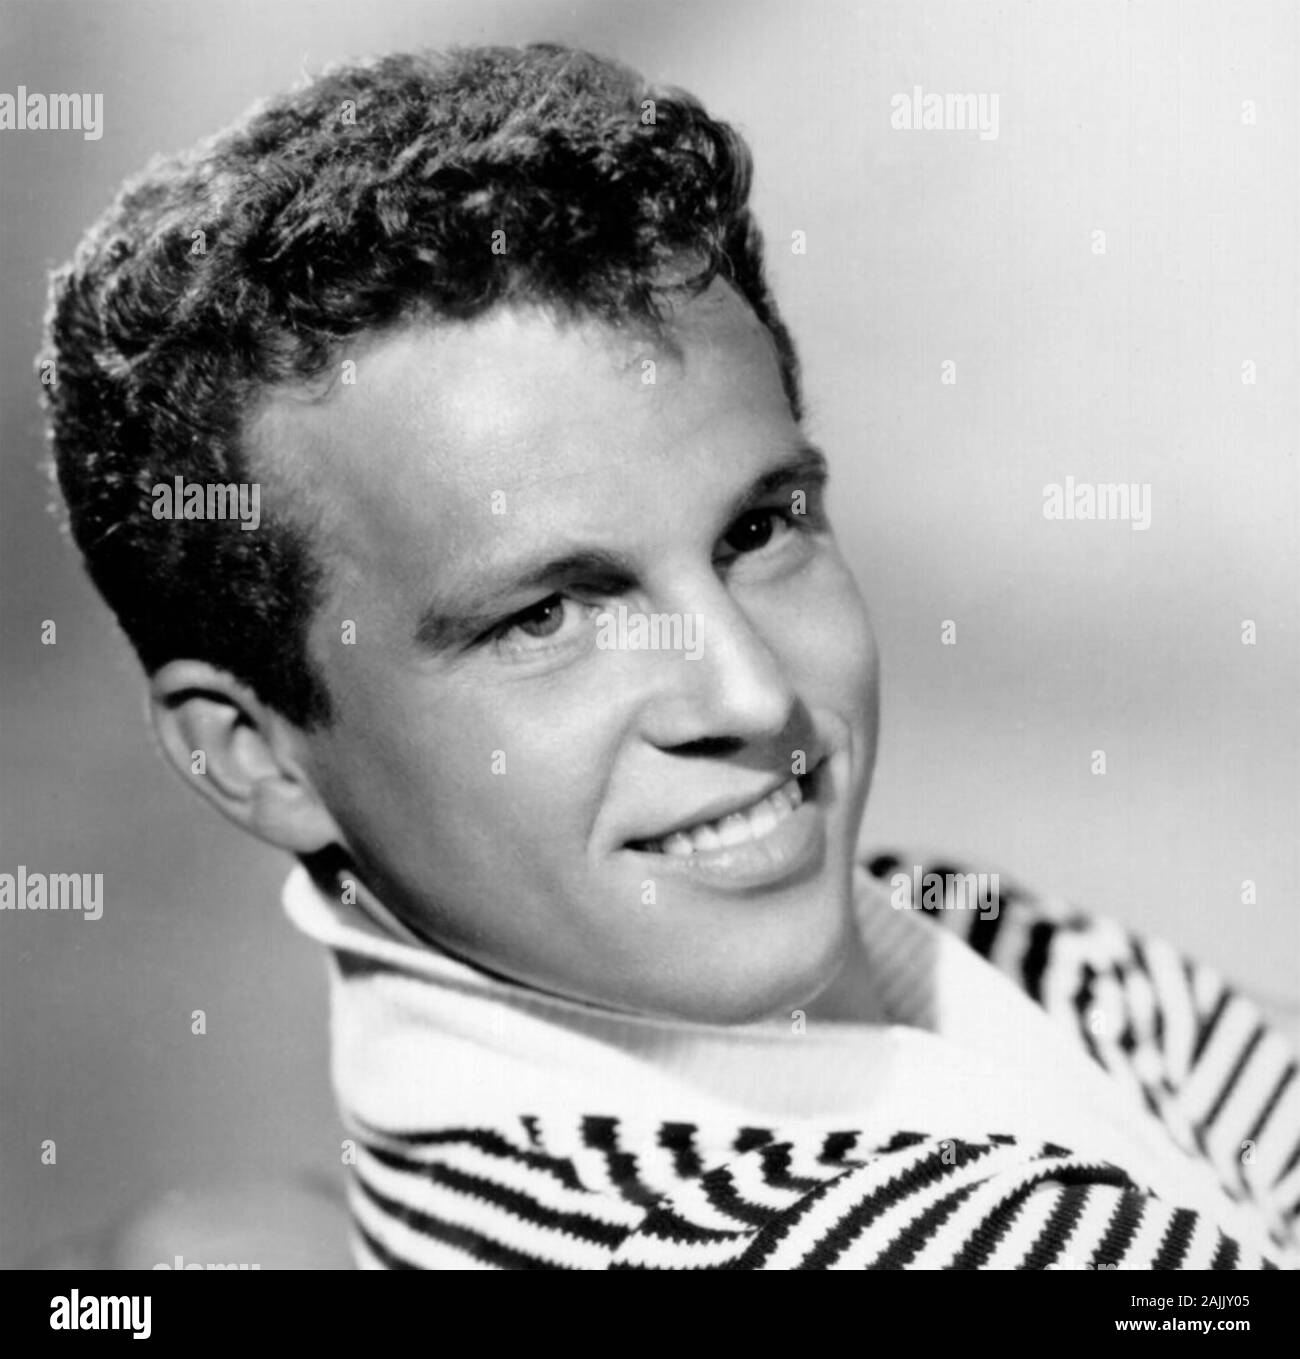 BOBBY VINTON foto promozionale del cantante polacco-americano circa 1965 Foto Stock